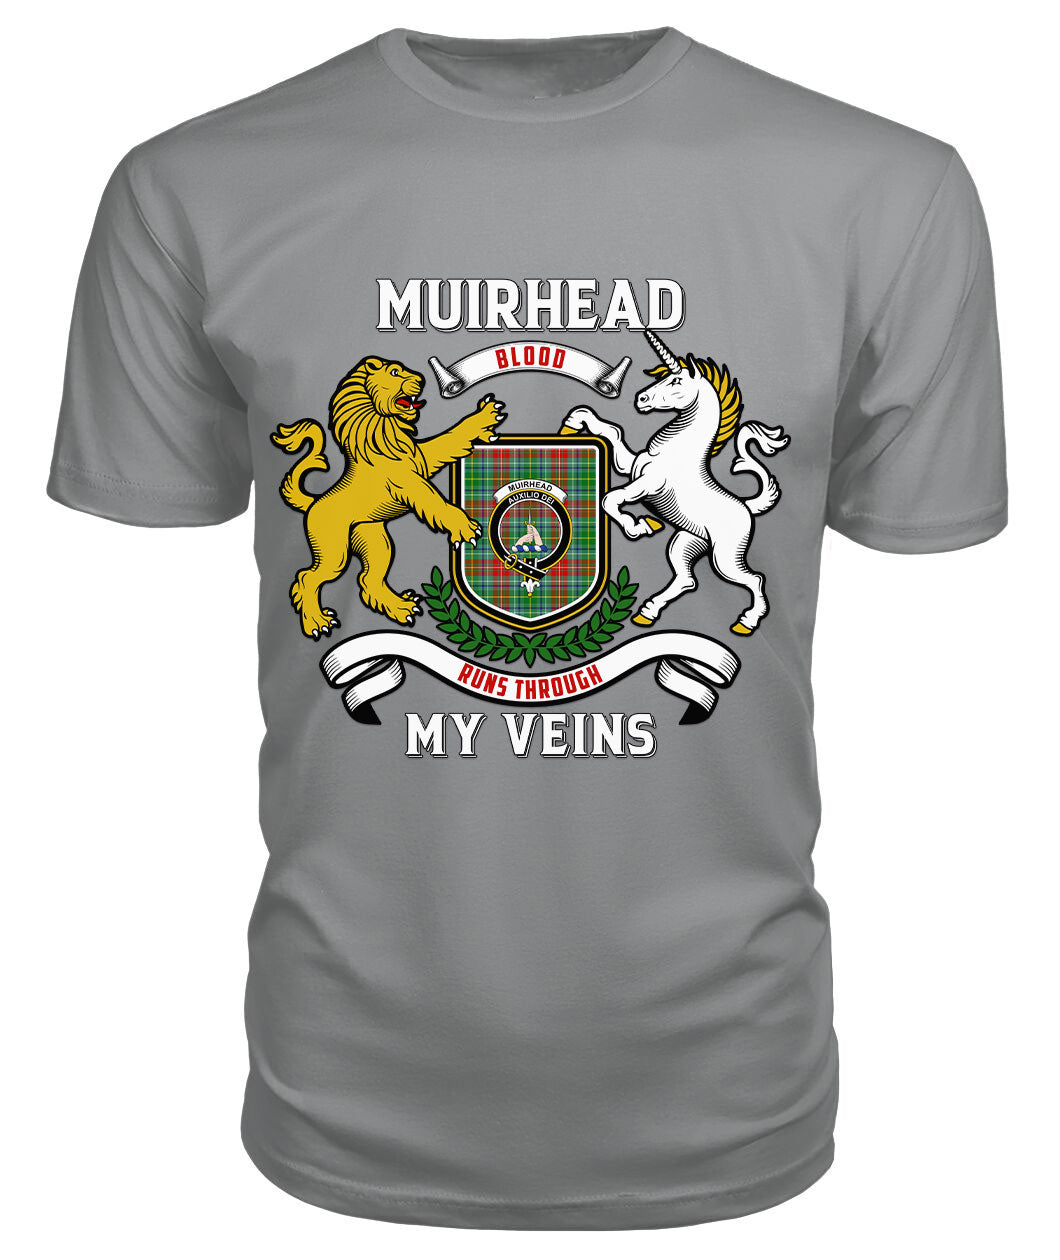 Muirhead Tartan Crest 2D T-shirt - Blood Runs Through My Veins Style